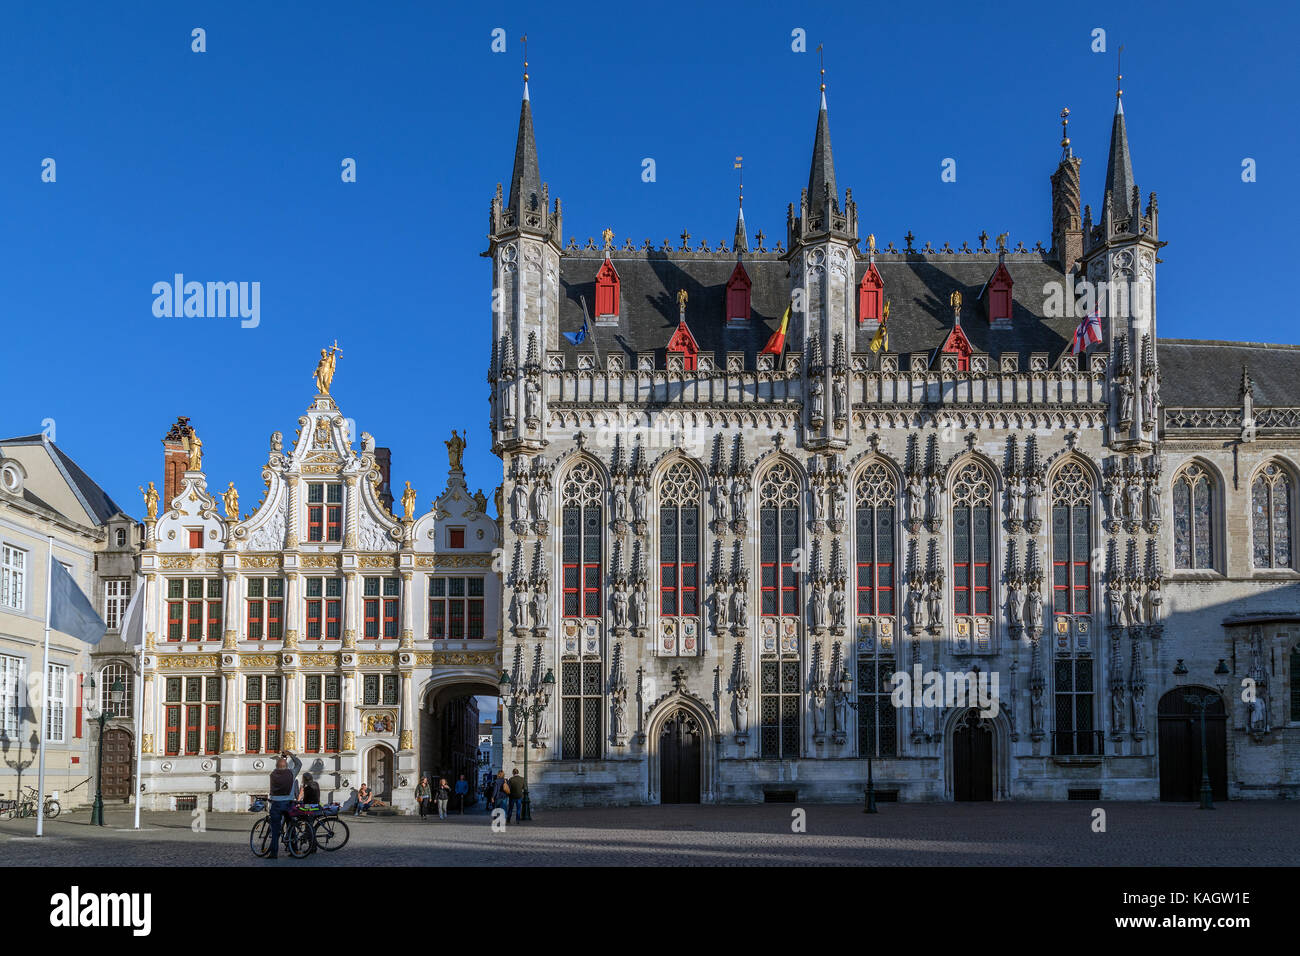 Le Provinciaal Hof (cour de la province) dans la région de brug square dans la ville de Bruges en Belgique. c'est l'ancien lieu de rencontre pour les gouvernements provinciaux Banque D'Images